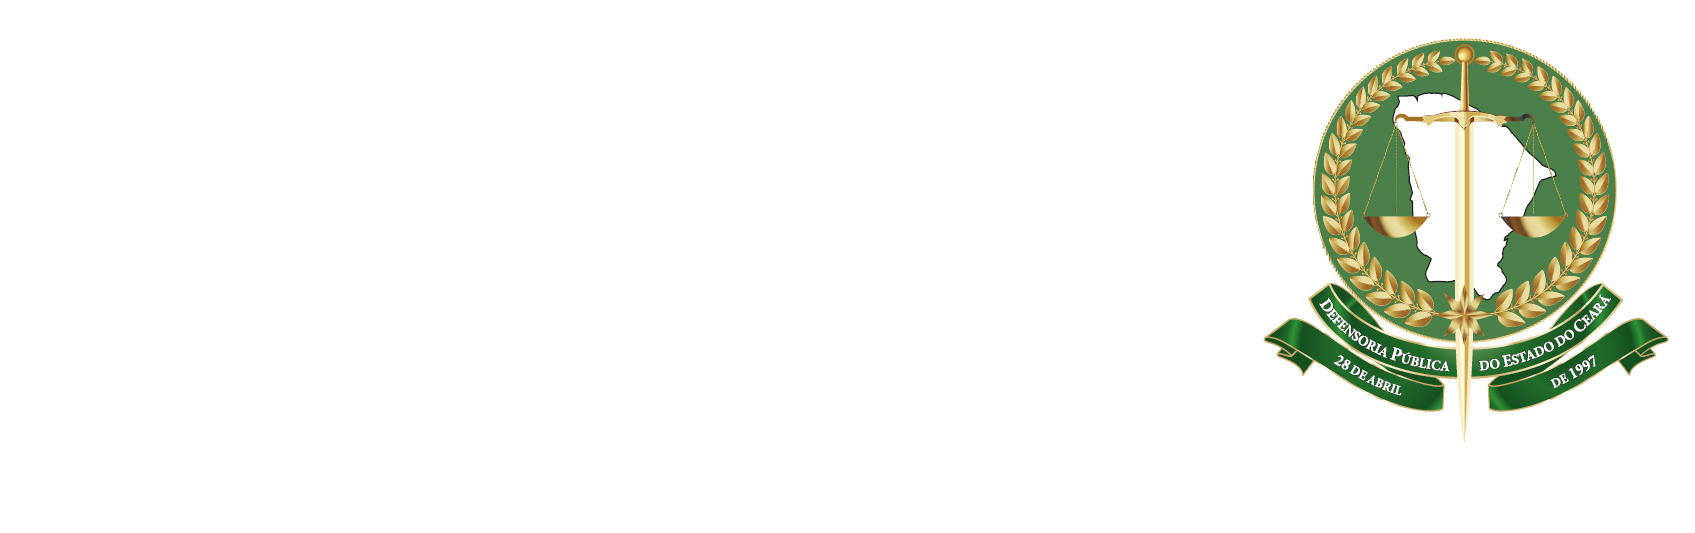 Defensoria Pública do Estado do Ceará